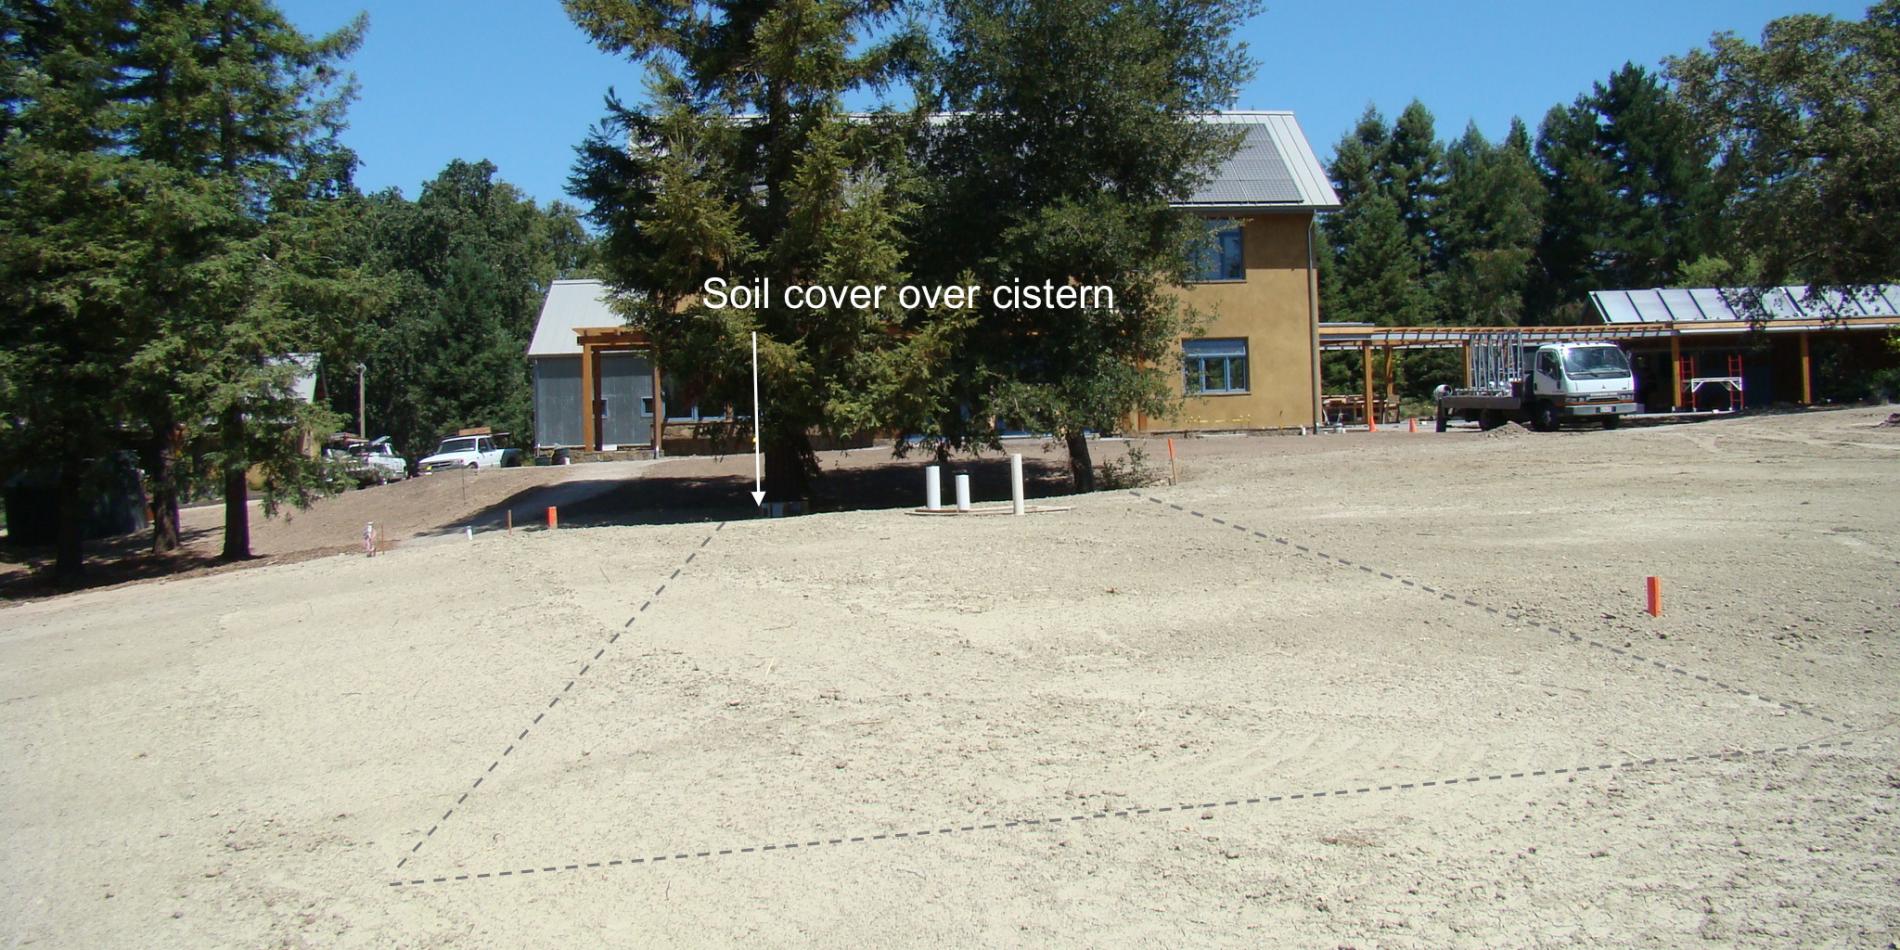 Soil cover over cistern